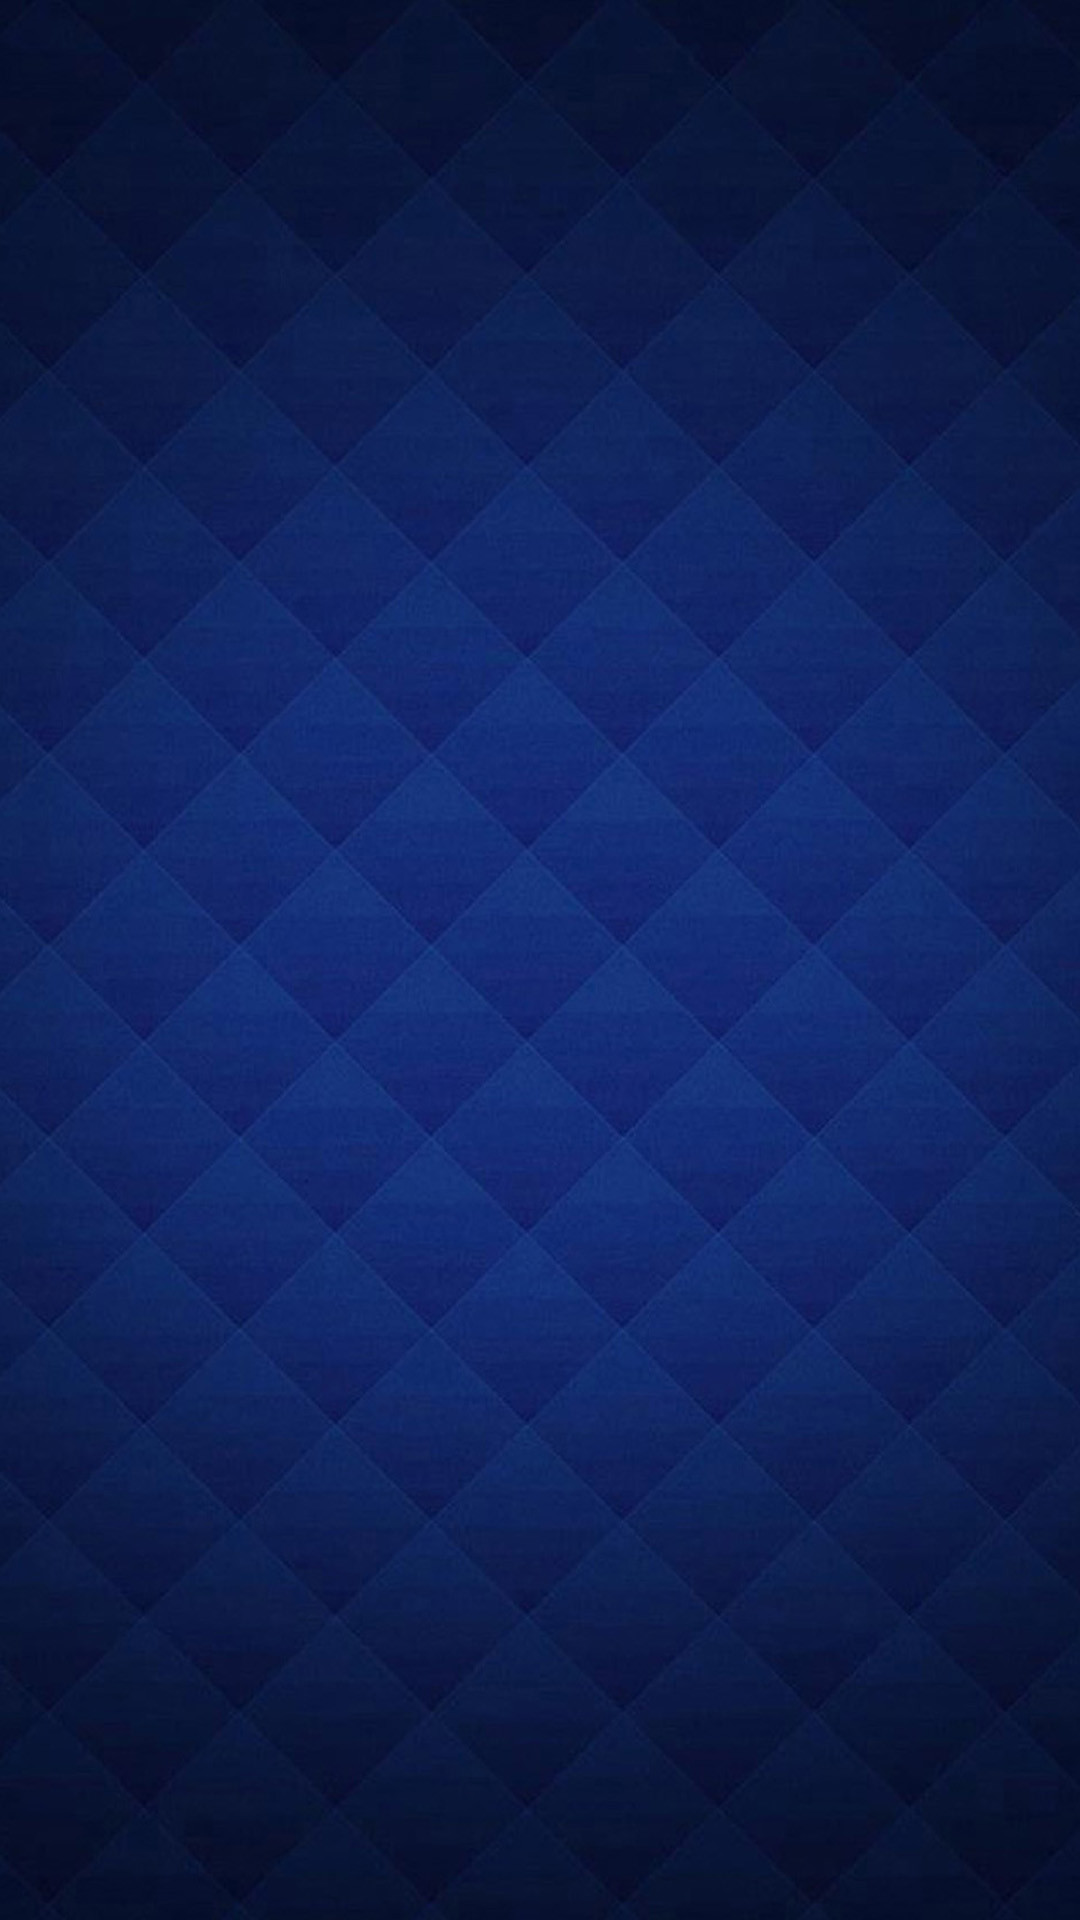 Light Blue Texture Wallpaper – WallpaperSafari